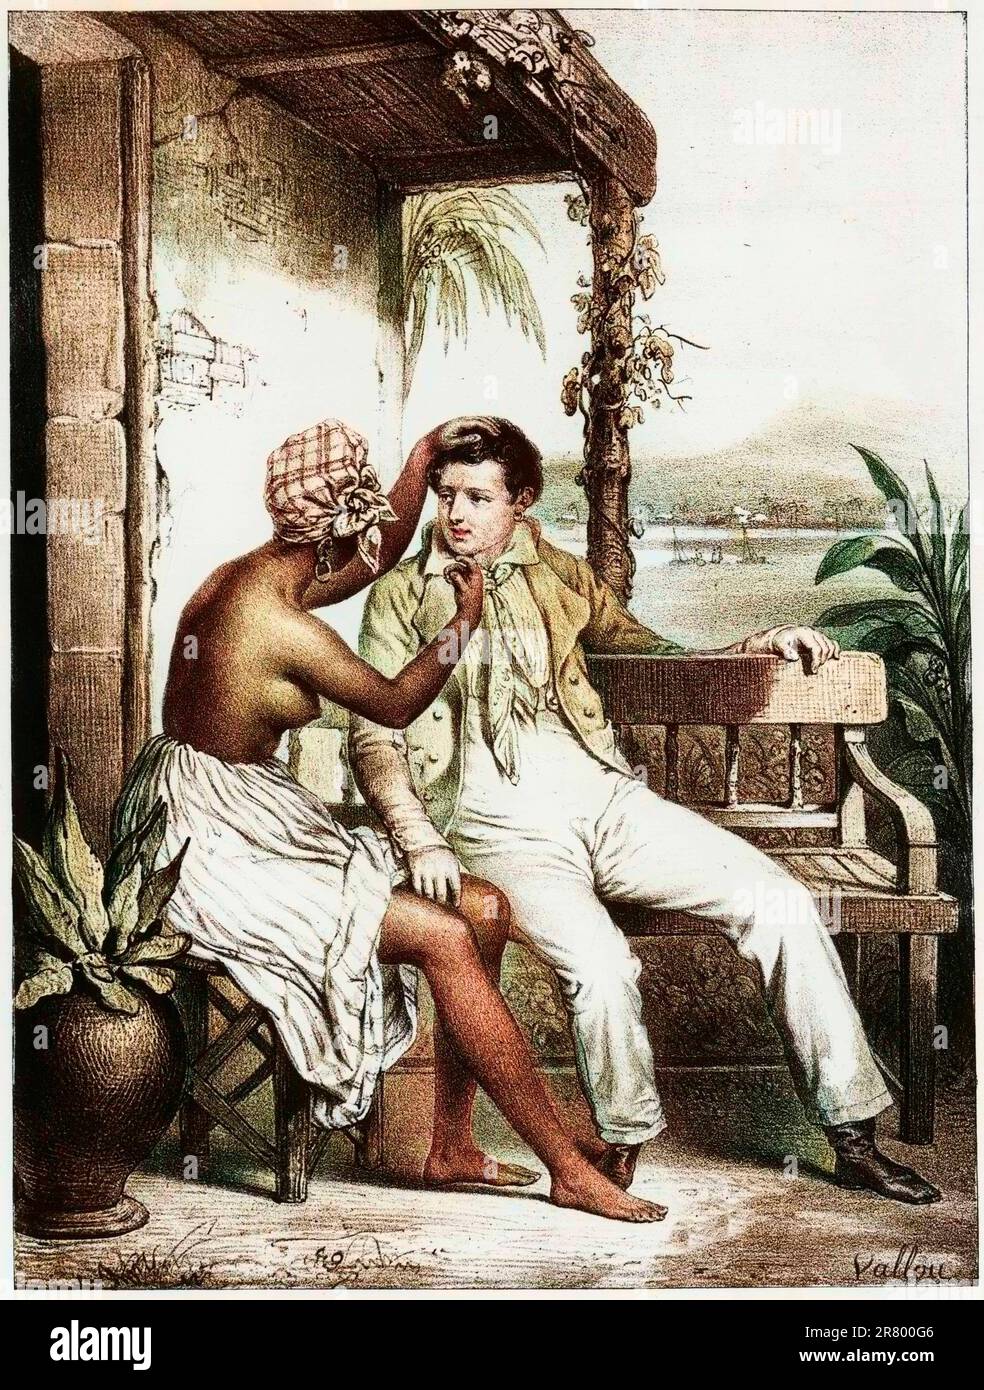 Le garçon blanc que j'aime, Martinique, gravure, vers 1820 - Esclave tentant de seduire un homme blanc Banque D'Images